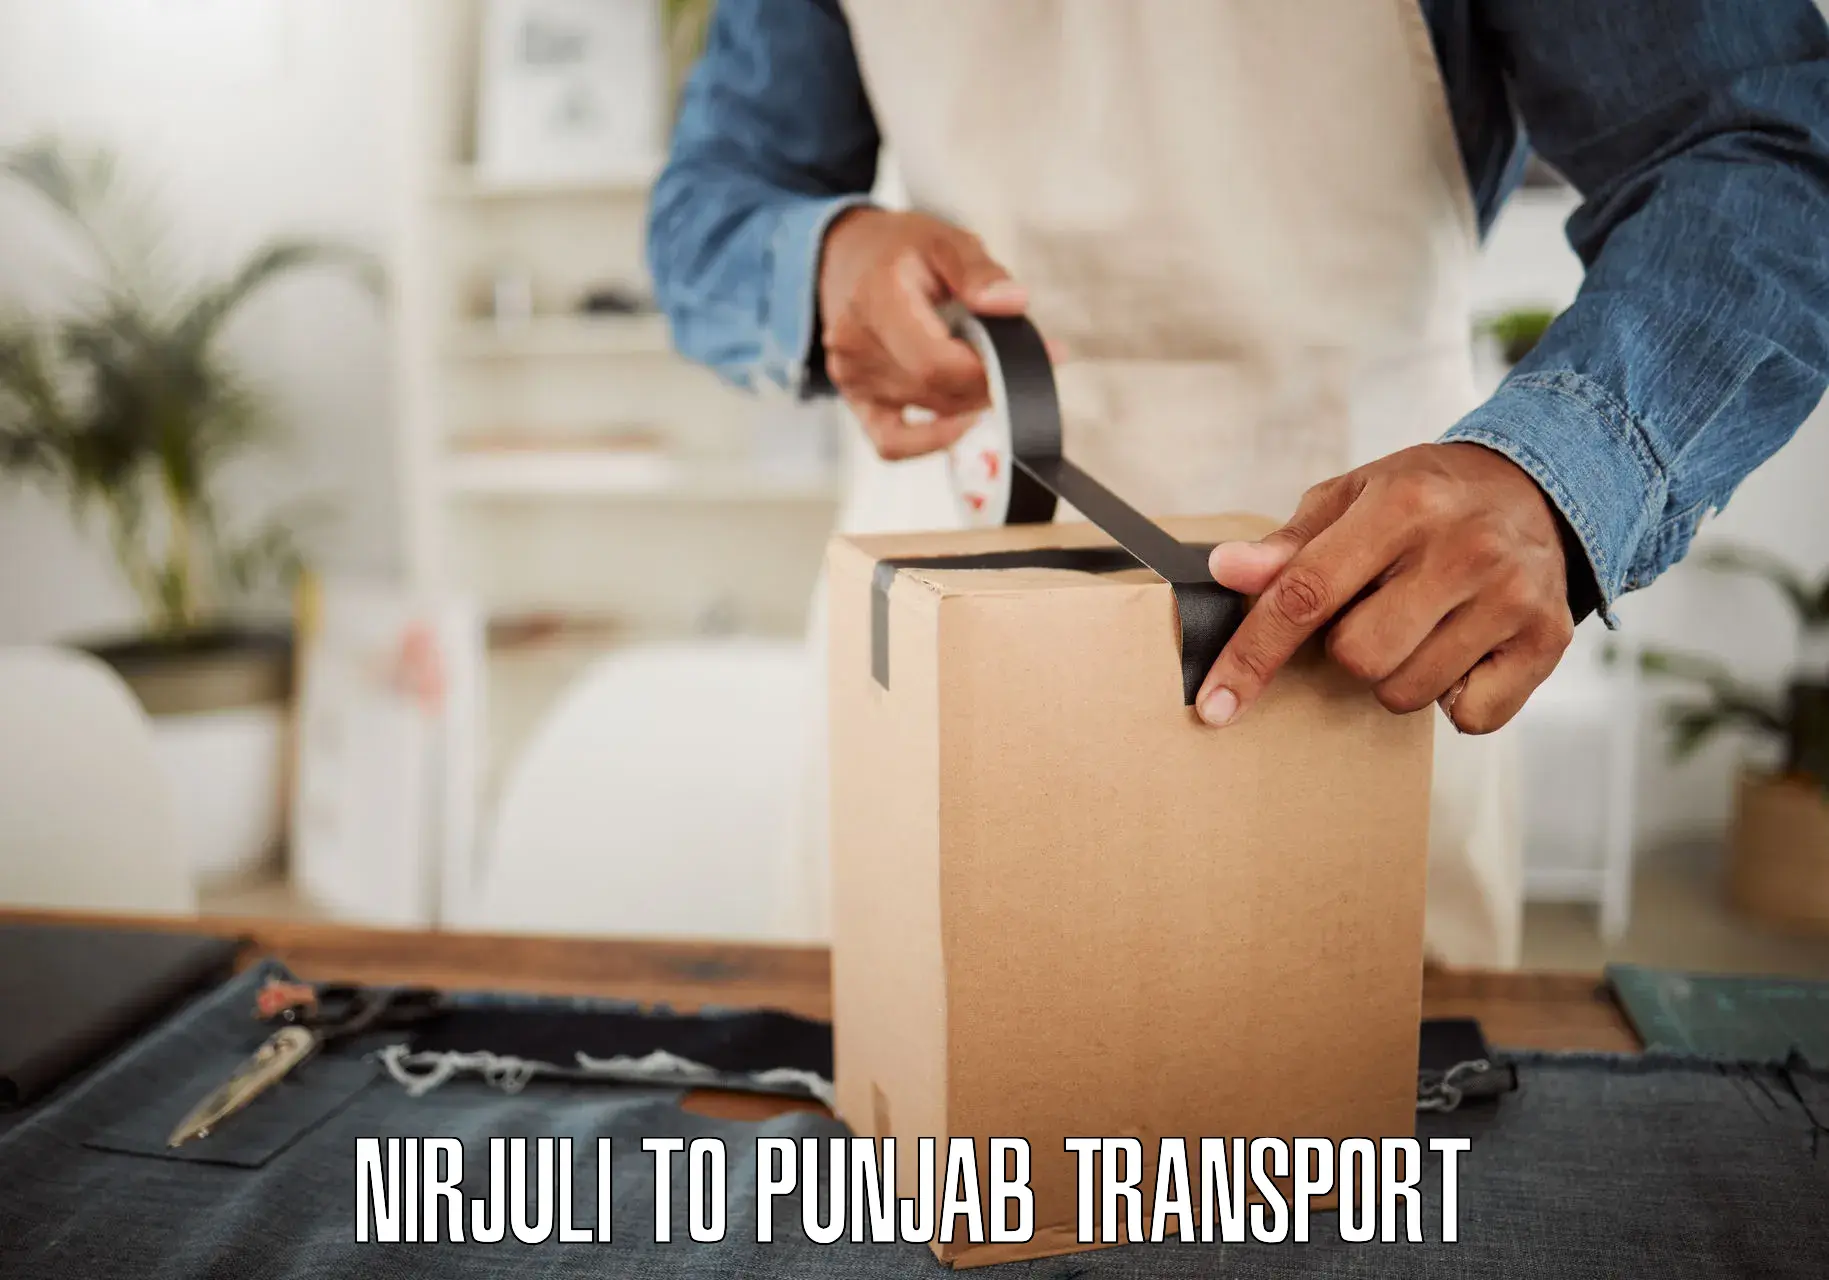 Express transport services Nirjuli to Punjab